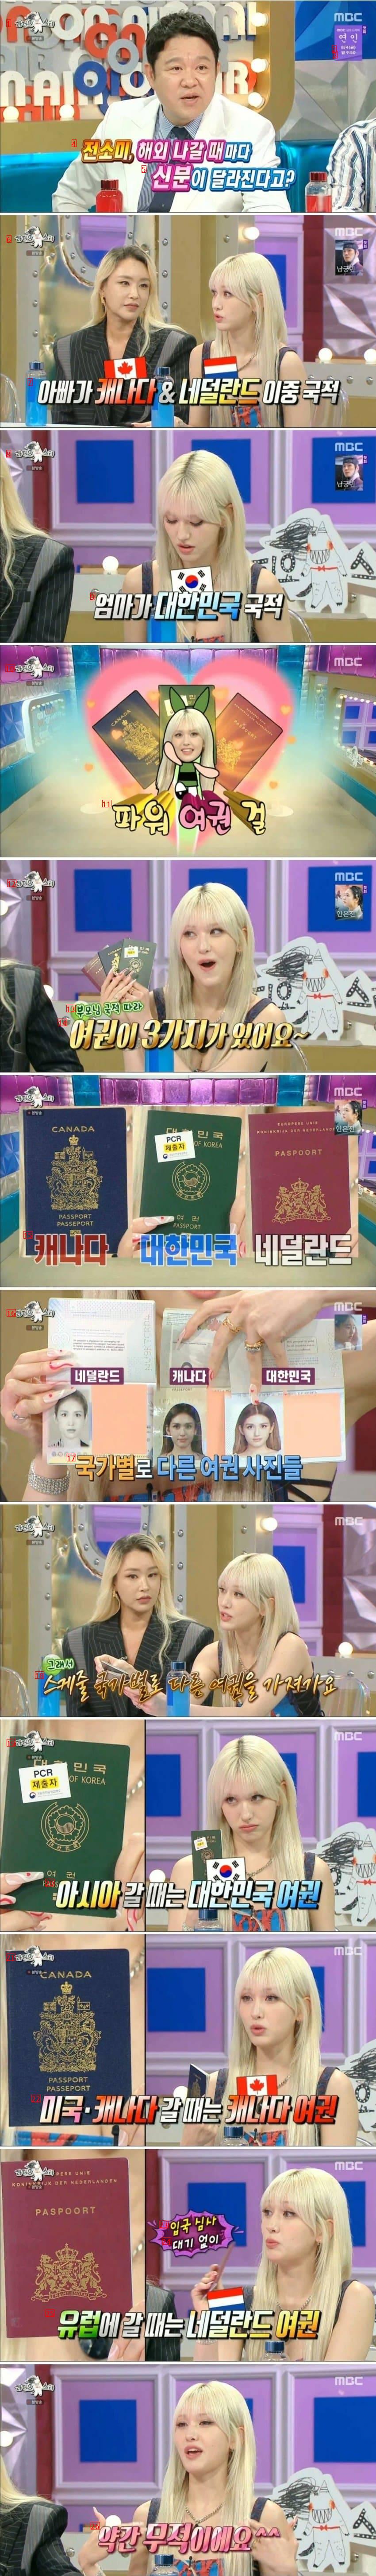 三重国籍チョン·ソミのパスポートパワー